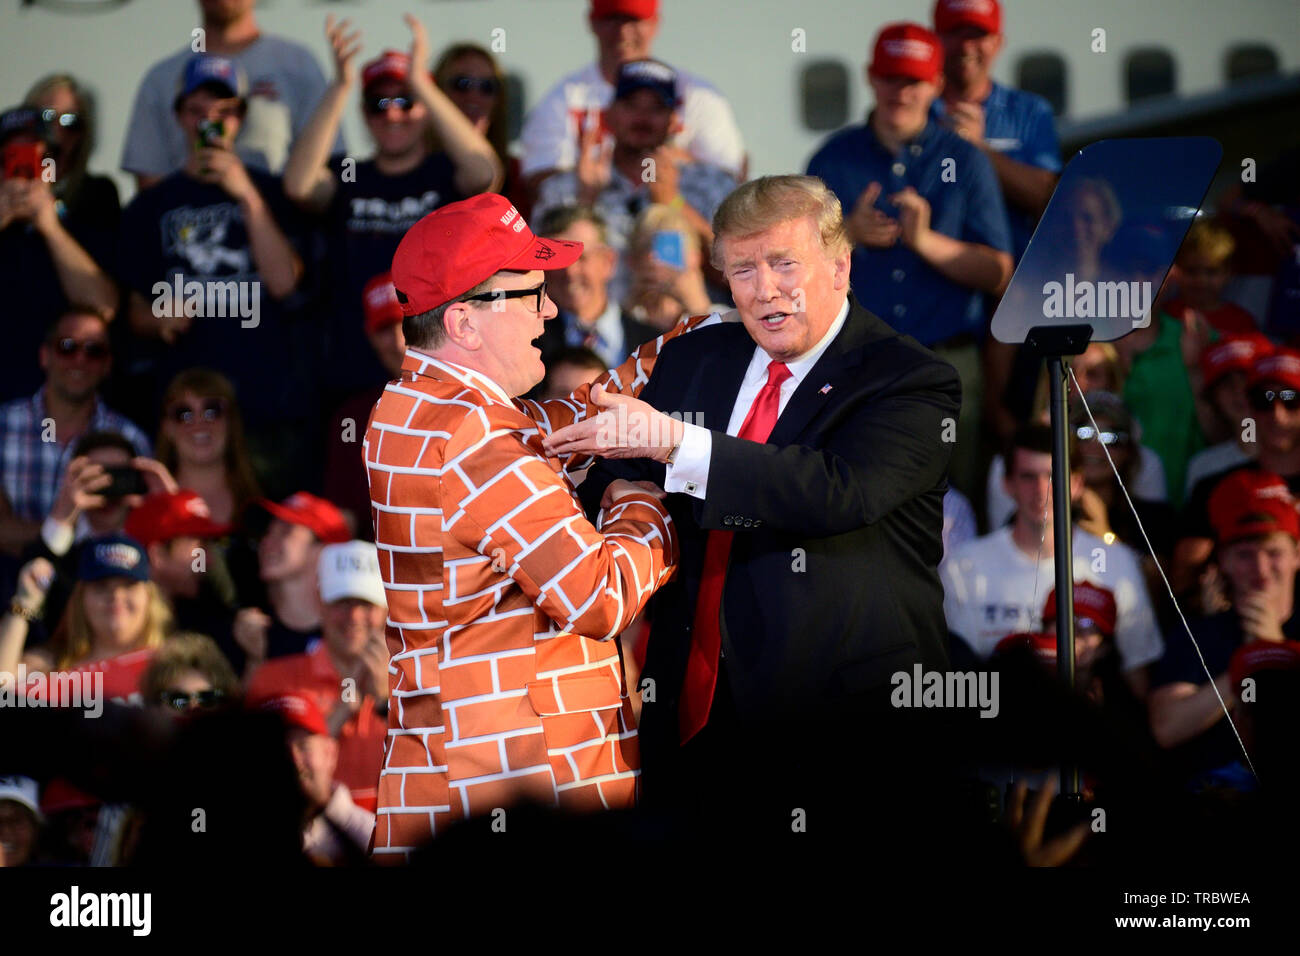 US-Präsident Donald J. Trumpf grüßt Blake Marnell auf der Bühne nach in der Menge an eine Mauer entdeckt gedruckt werden Stockfoto